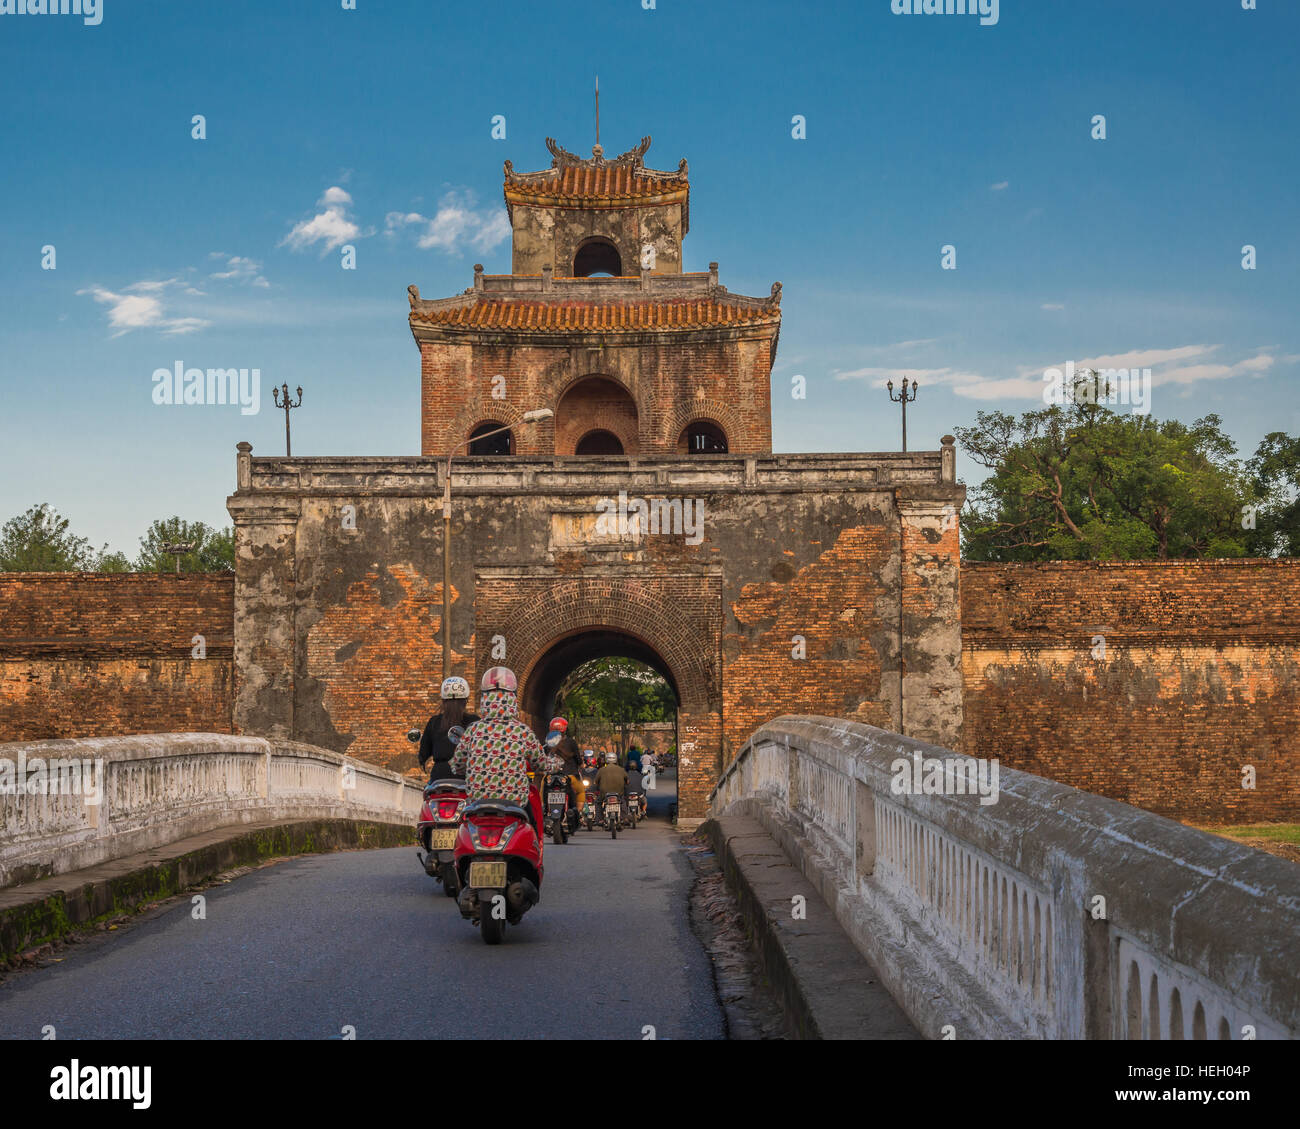 La position des scooters sur un pont et à travers l'imposante entrée de la citadelle impériale de Hue, Vietnam Banque D'Images